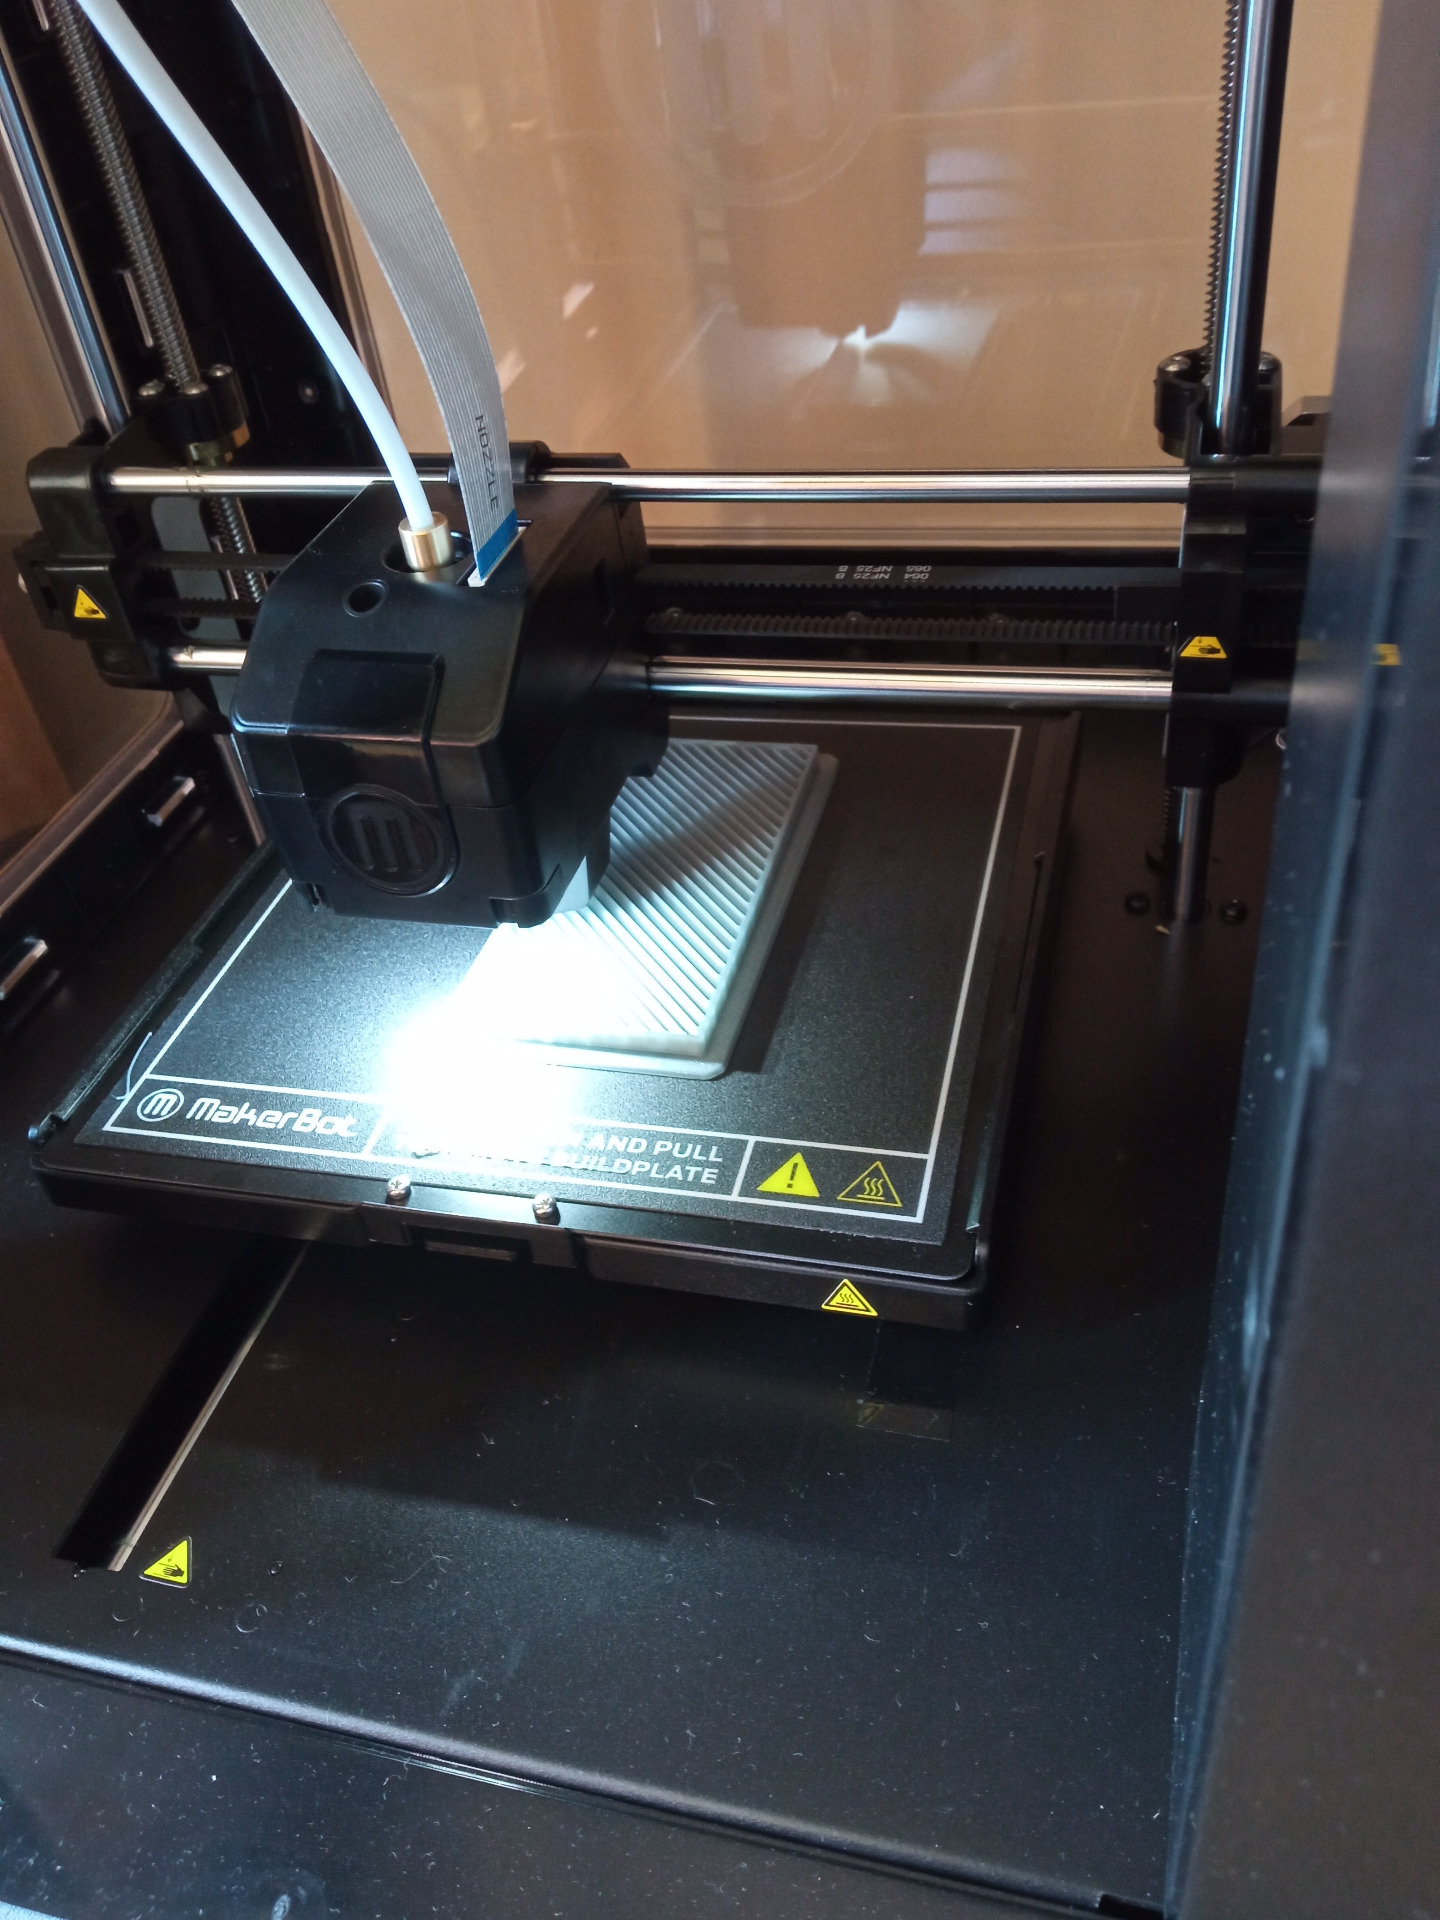 Widok drukarki, która wykonuje wydruk za pomocą głowicy na specjalnej platformie (zdjęcie w ze środka drukarki).